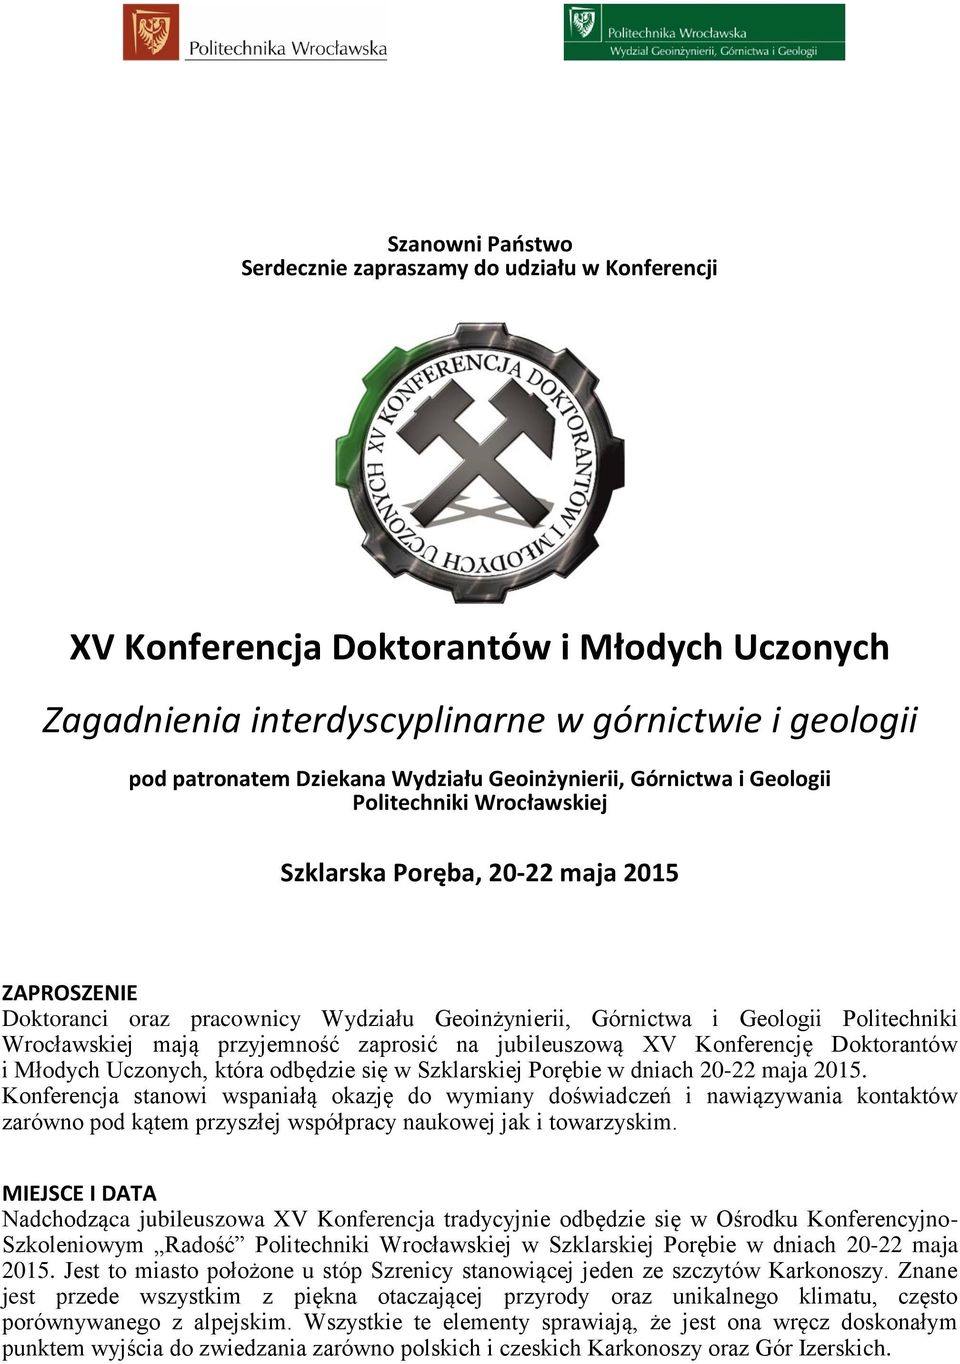 Wrocławskiej mają przyjemność zaprosić na jubileuszową XV Konferencję Doktorantów i Młodych Uczonych, która odbędzie się w Szklarskiej Porębie w dniach 20-22 maja 2015.